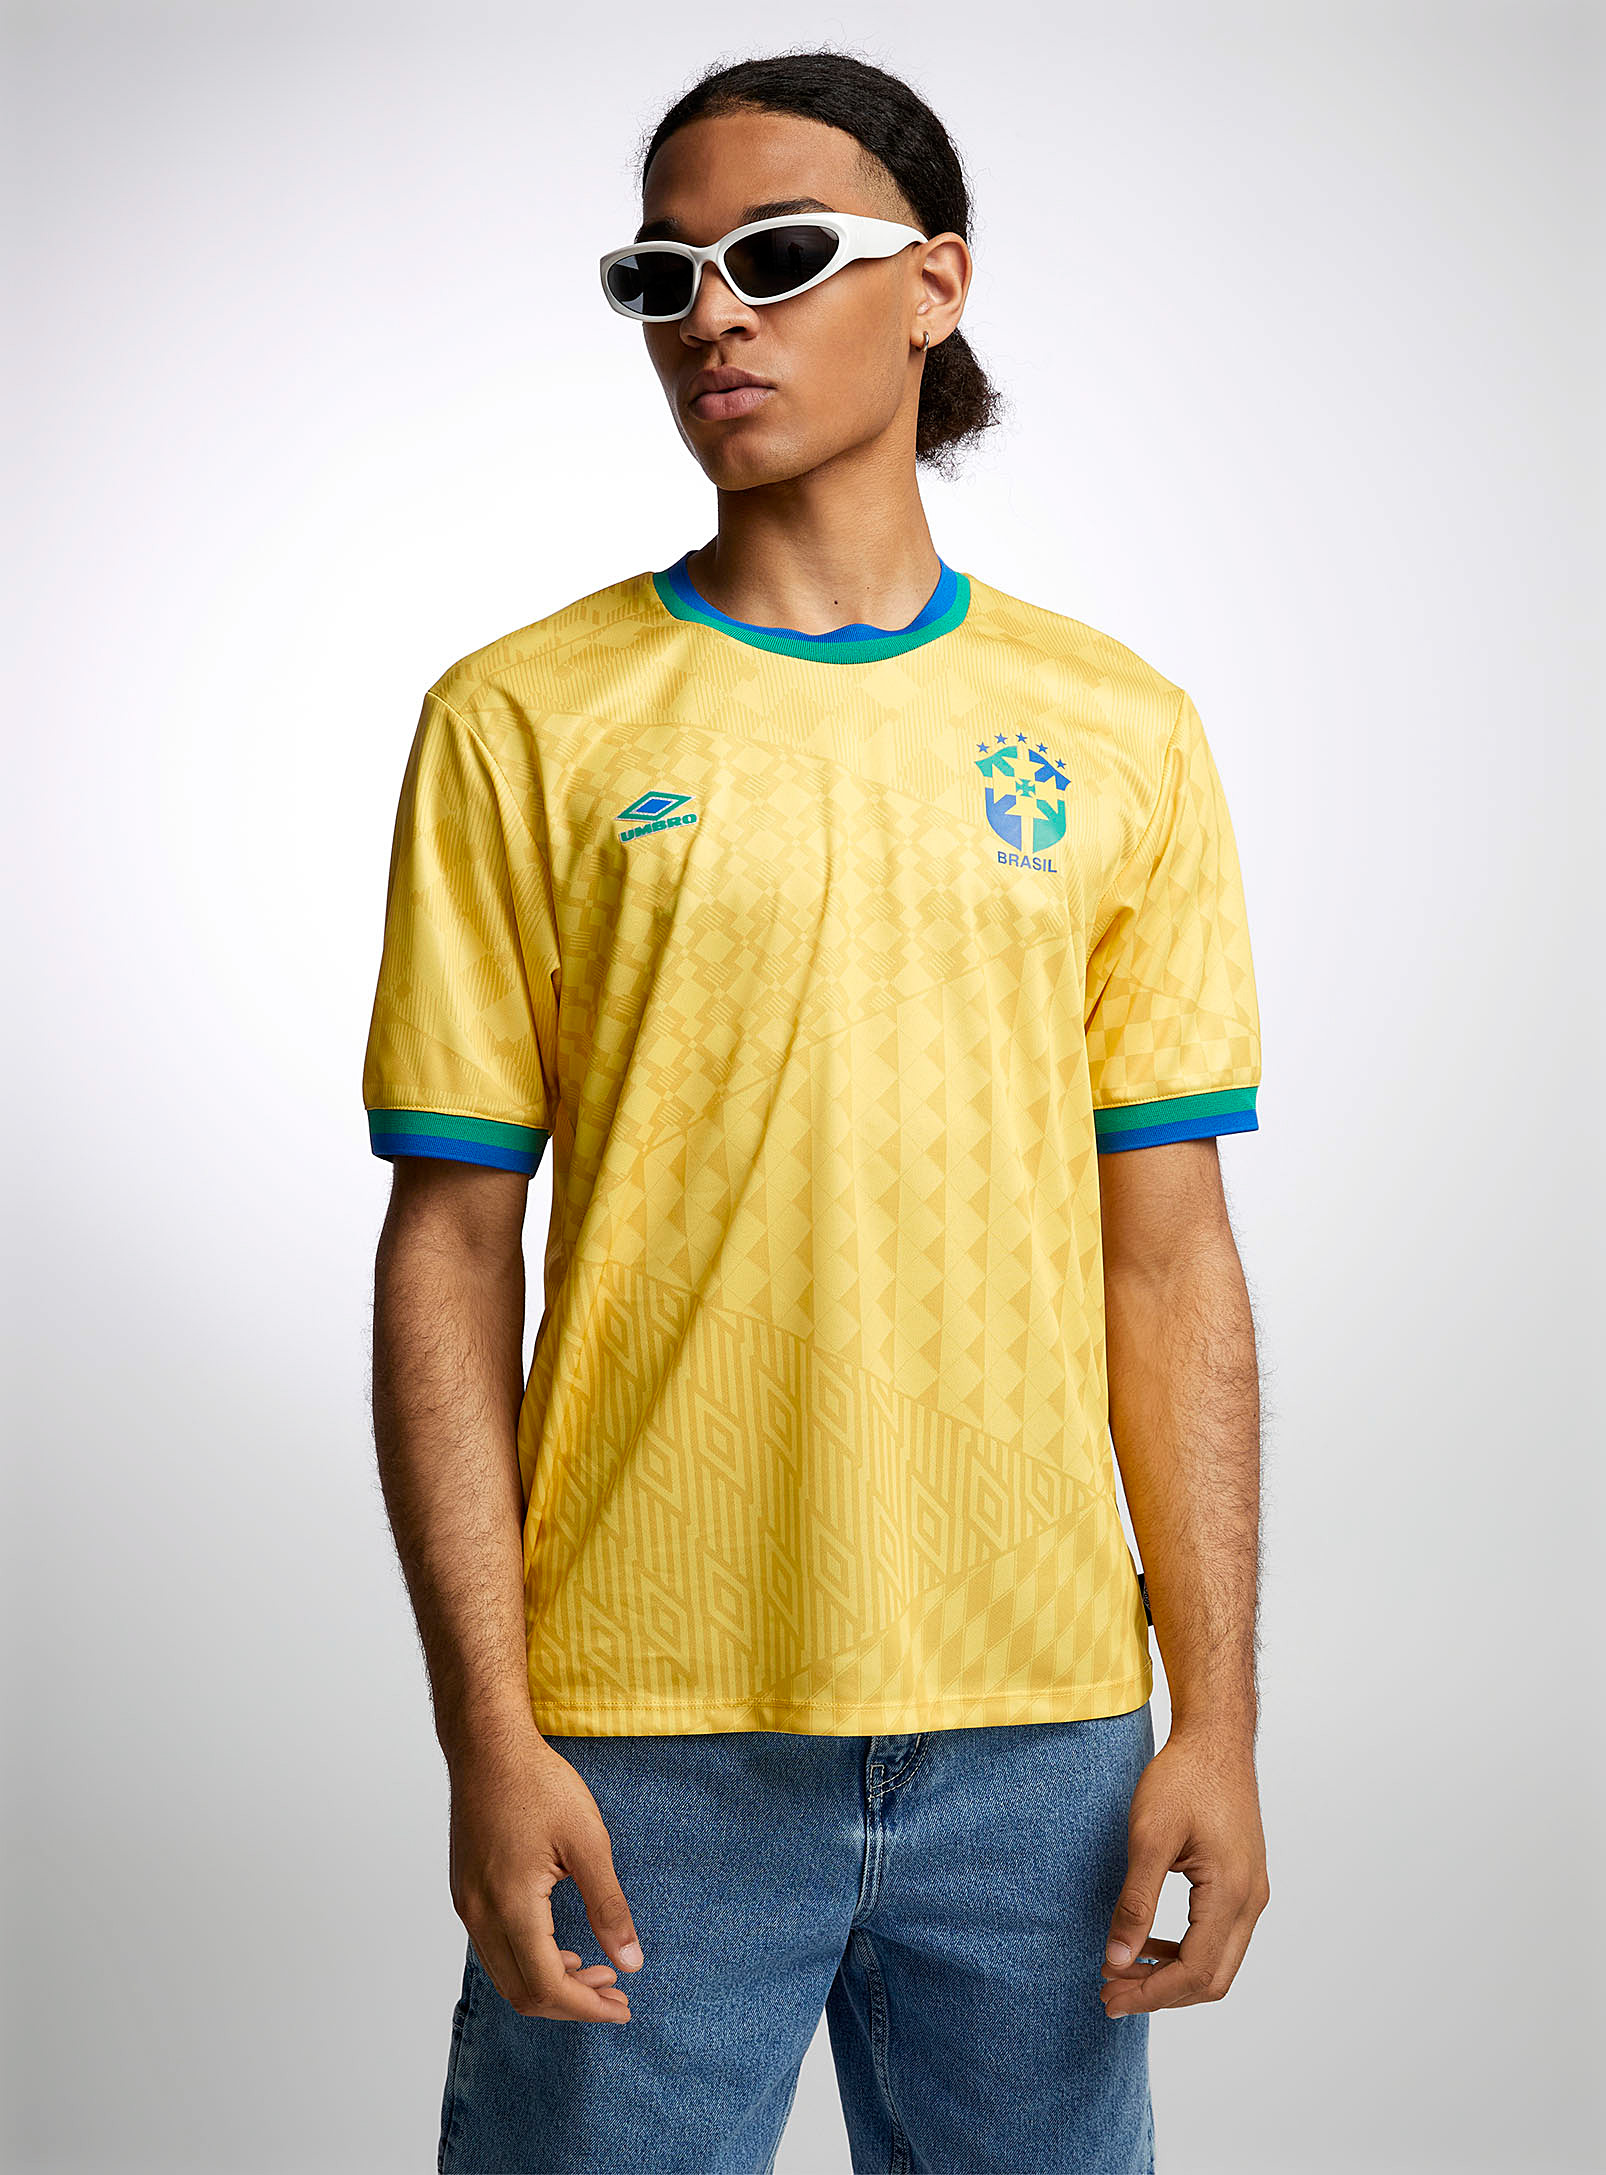 Umbro Brazil Soccer Jersey In Golden Yellow